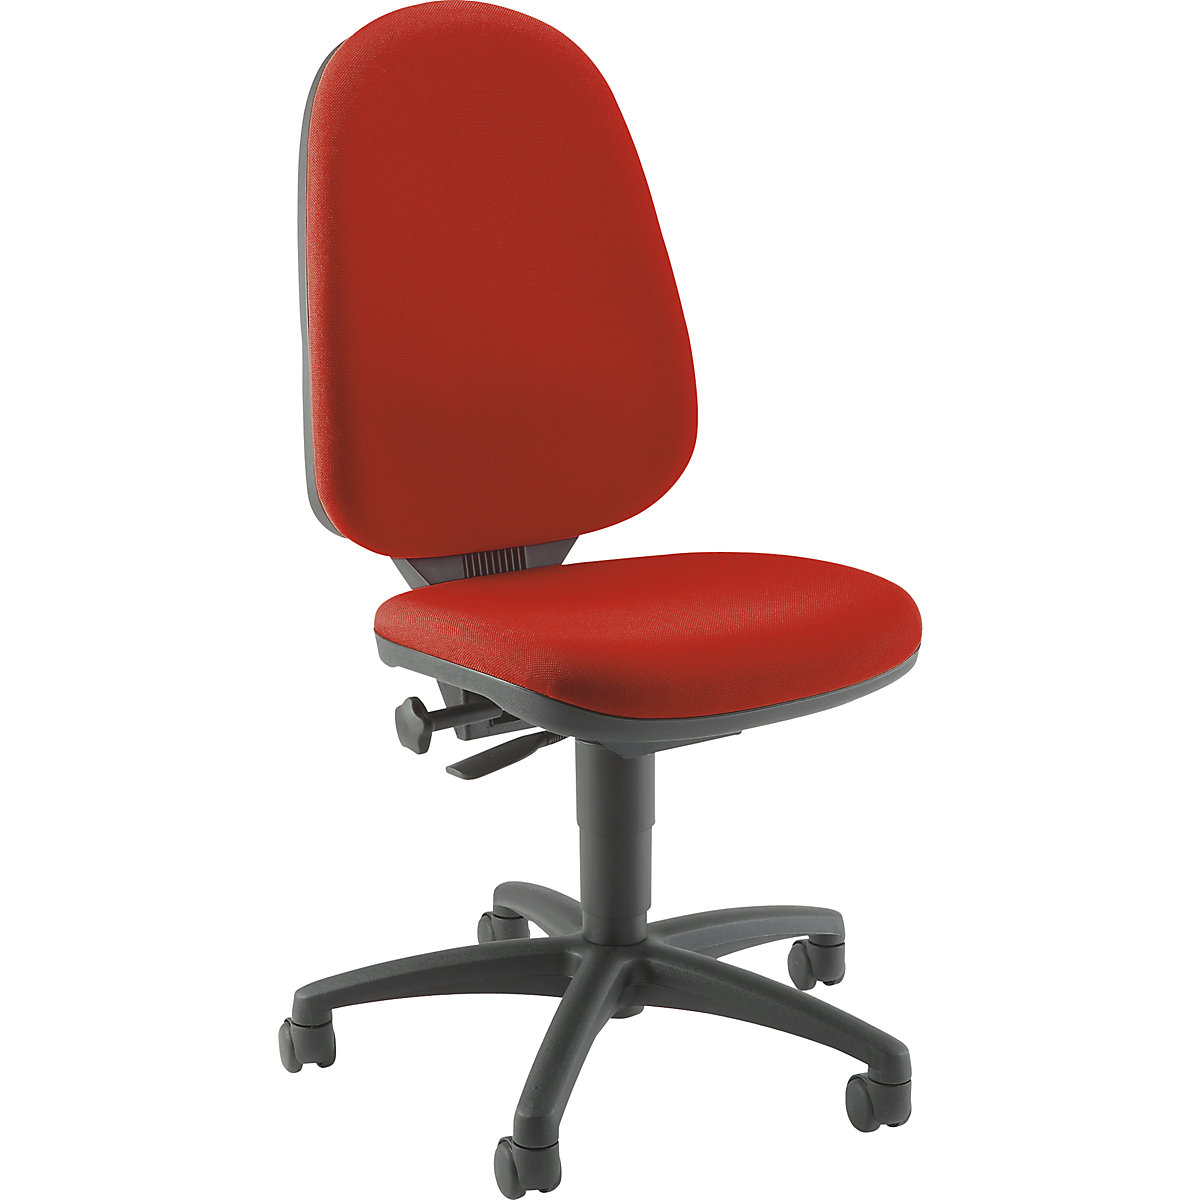 Cadeira giratória standard – Topstar, sem apoios para braços, encosto de 550 mm, armação preta, tecido vermelho-5